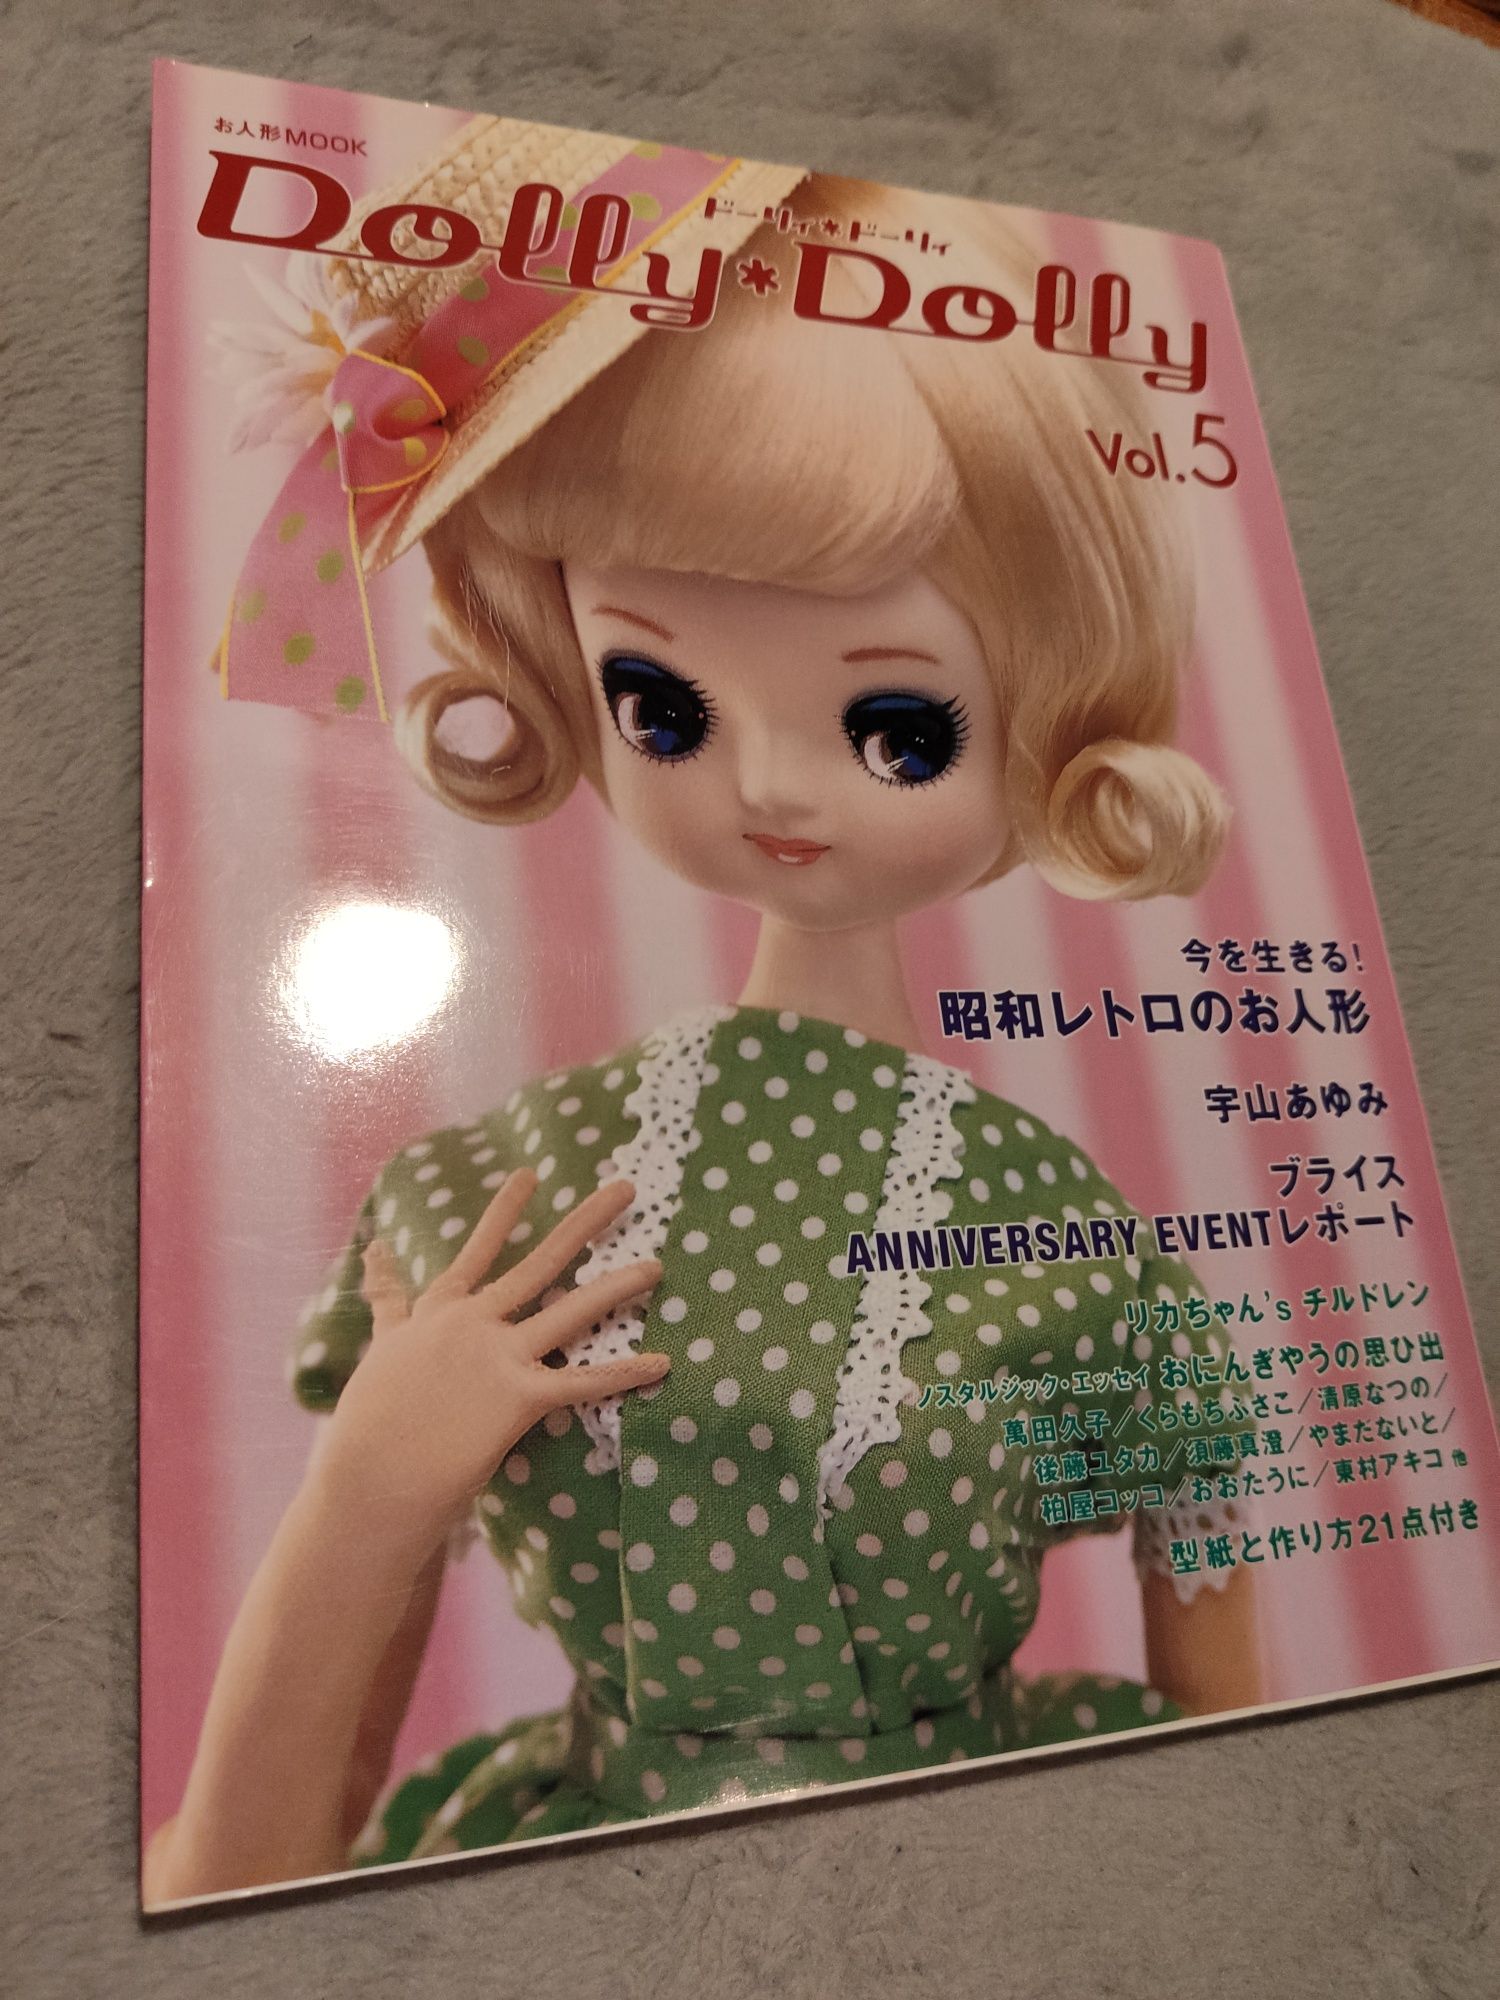 Dolly Dolly vol.5 gazeta japońska o lalkach